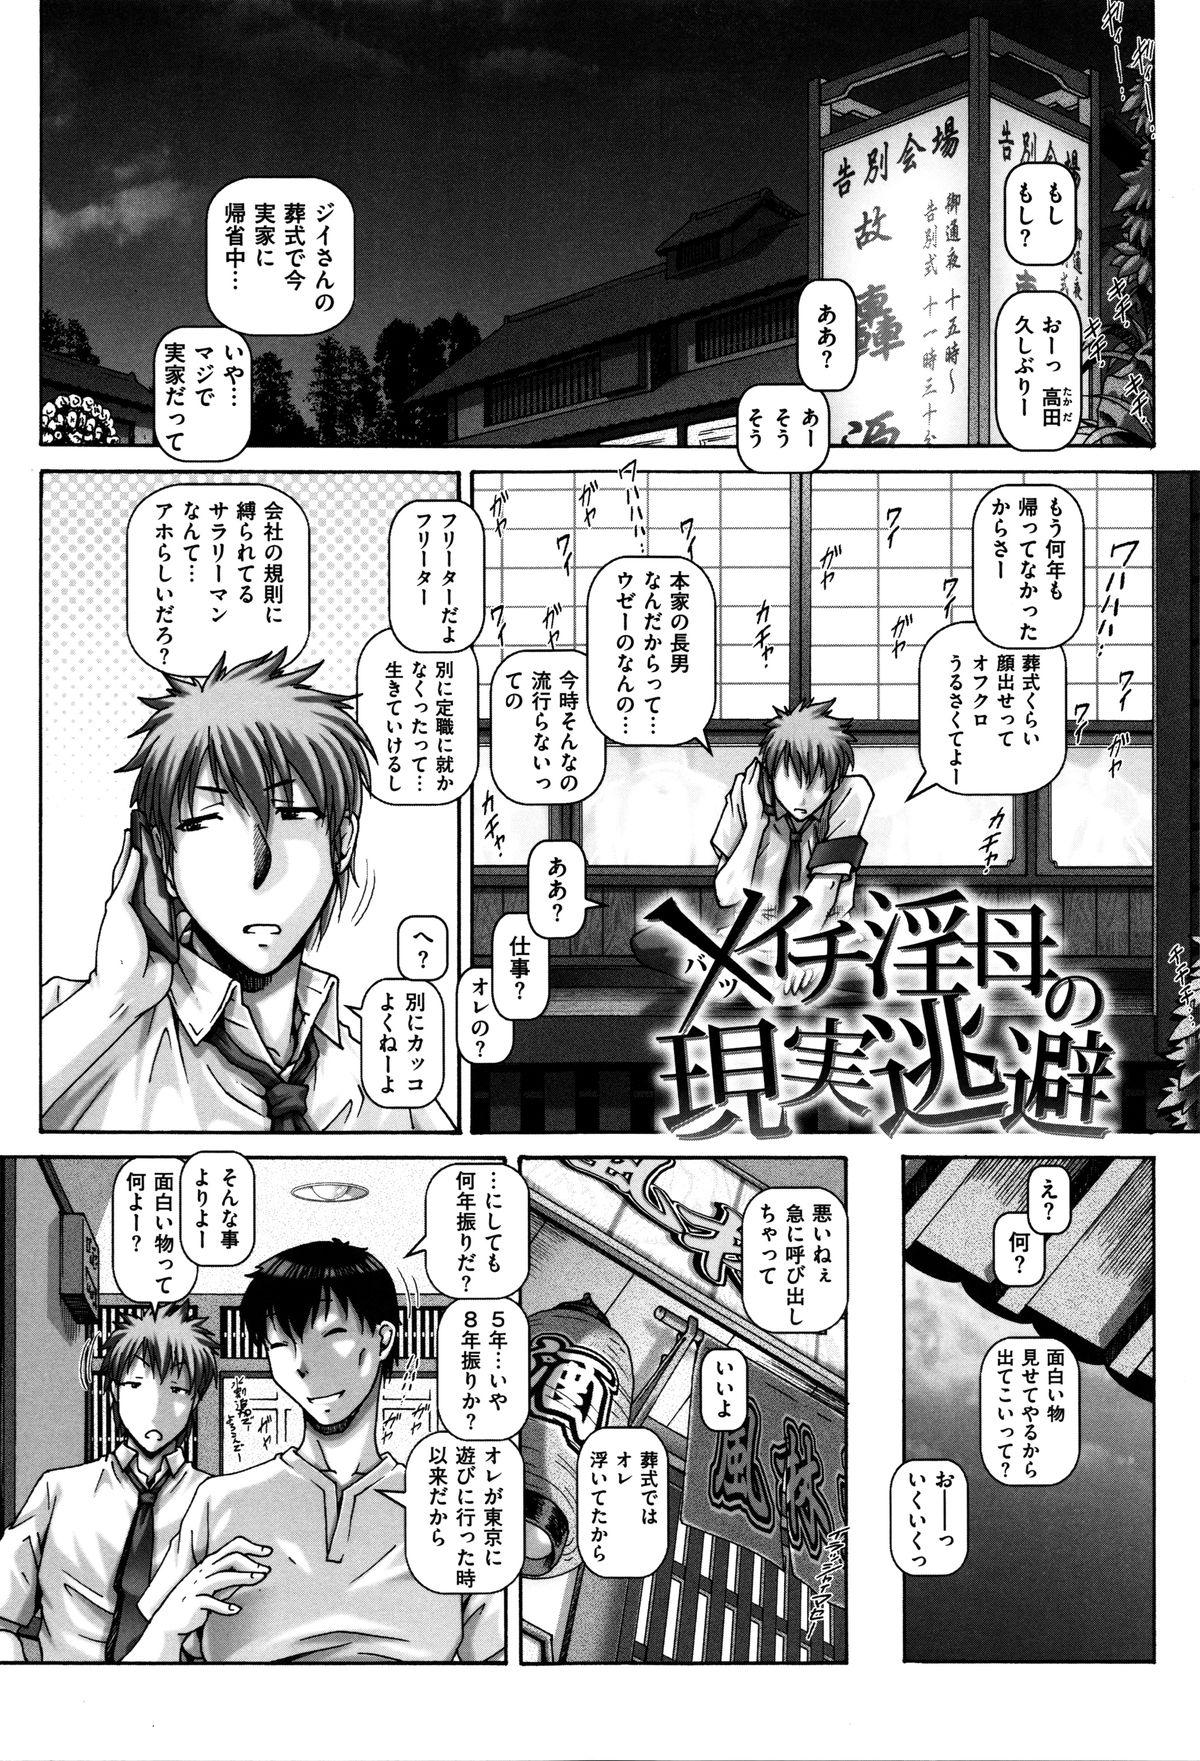 English Kachiku Ane - chapter 1,5,7 & 9 Arabe - Page 2